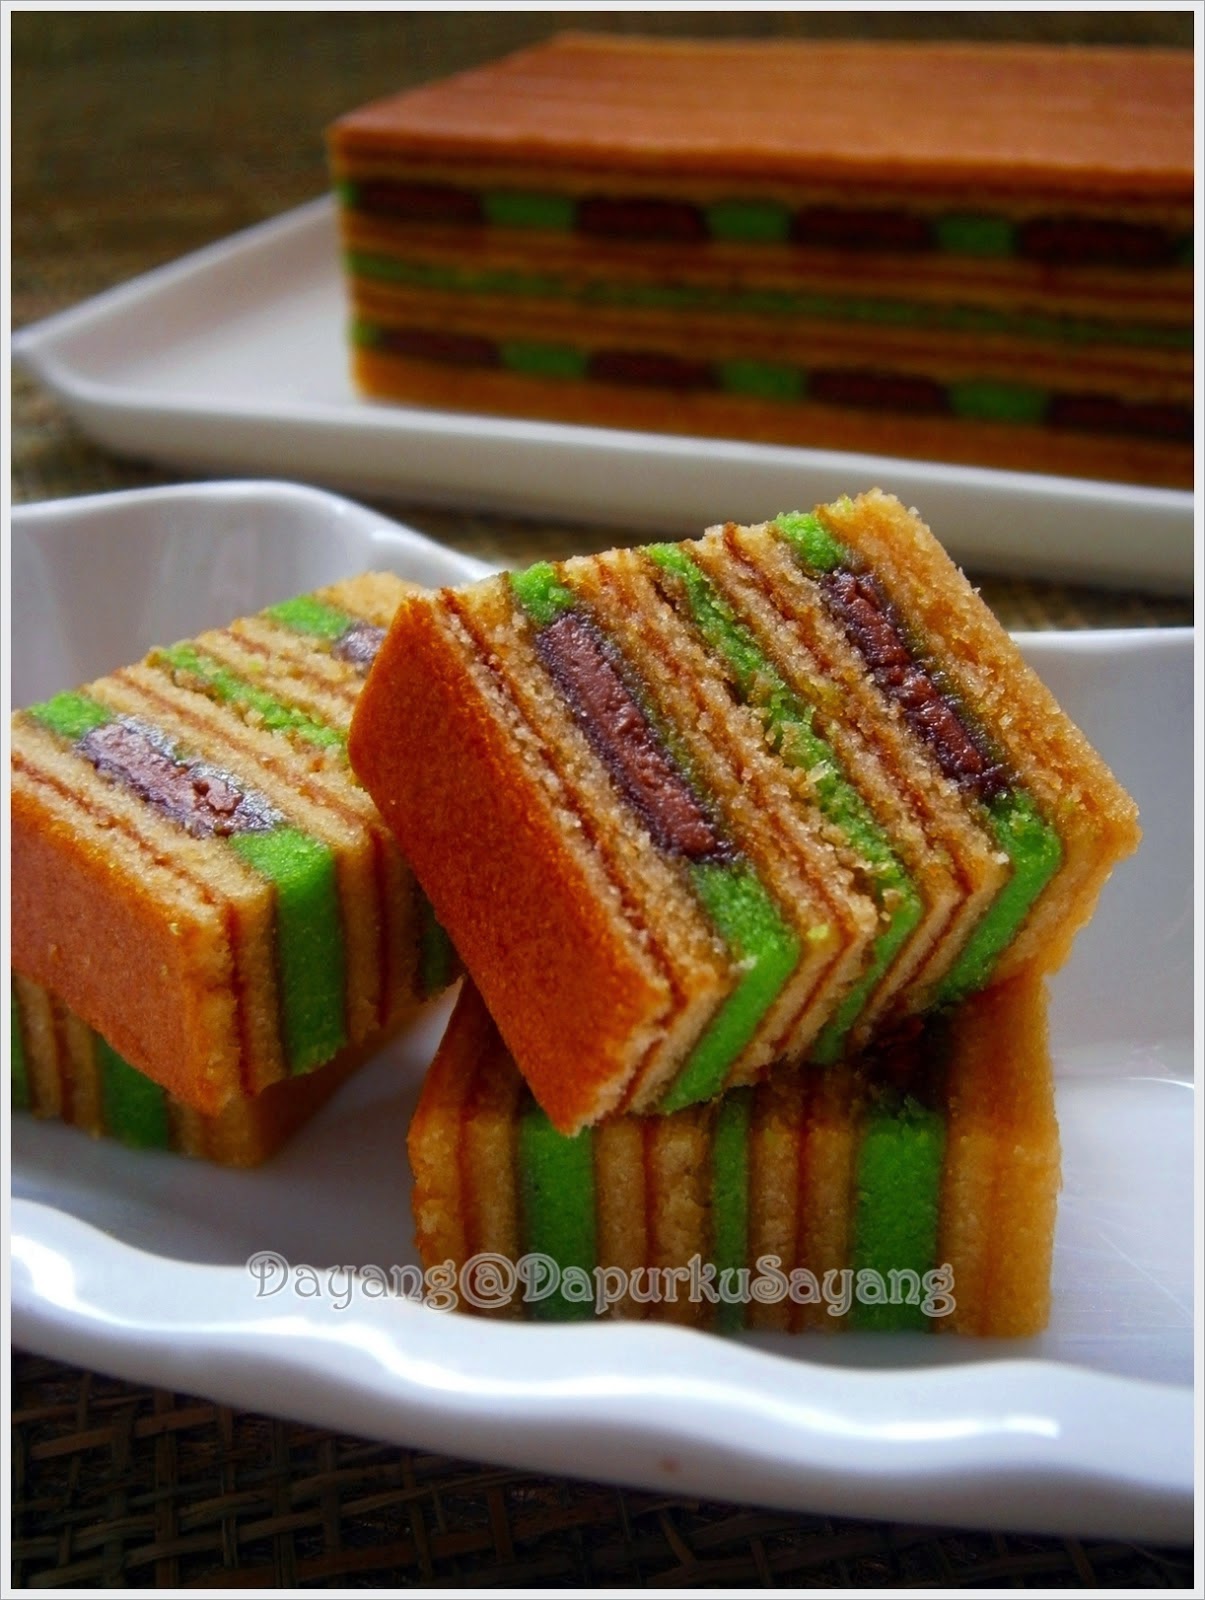 jom-kedapur: Resepi Kek Lapis Sarawak - Kek Lapis Coklat Cadbury